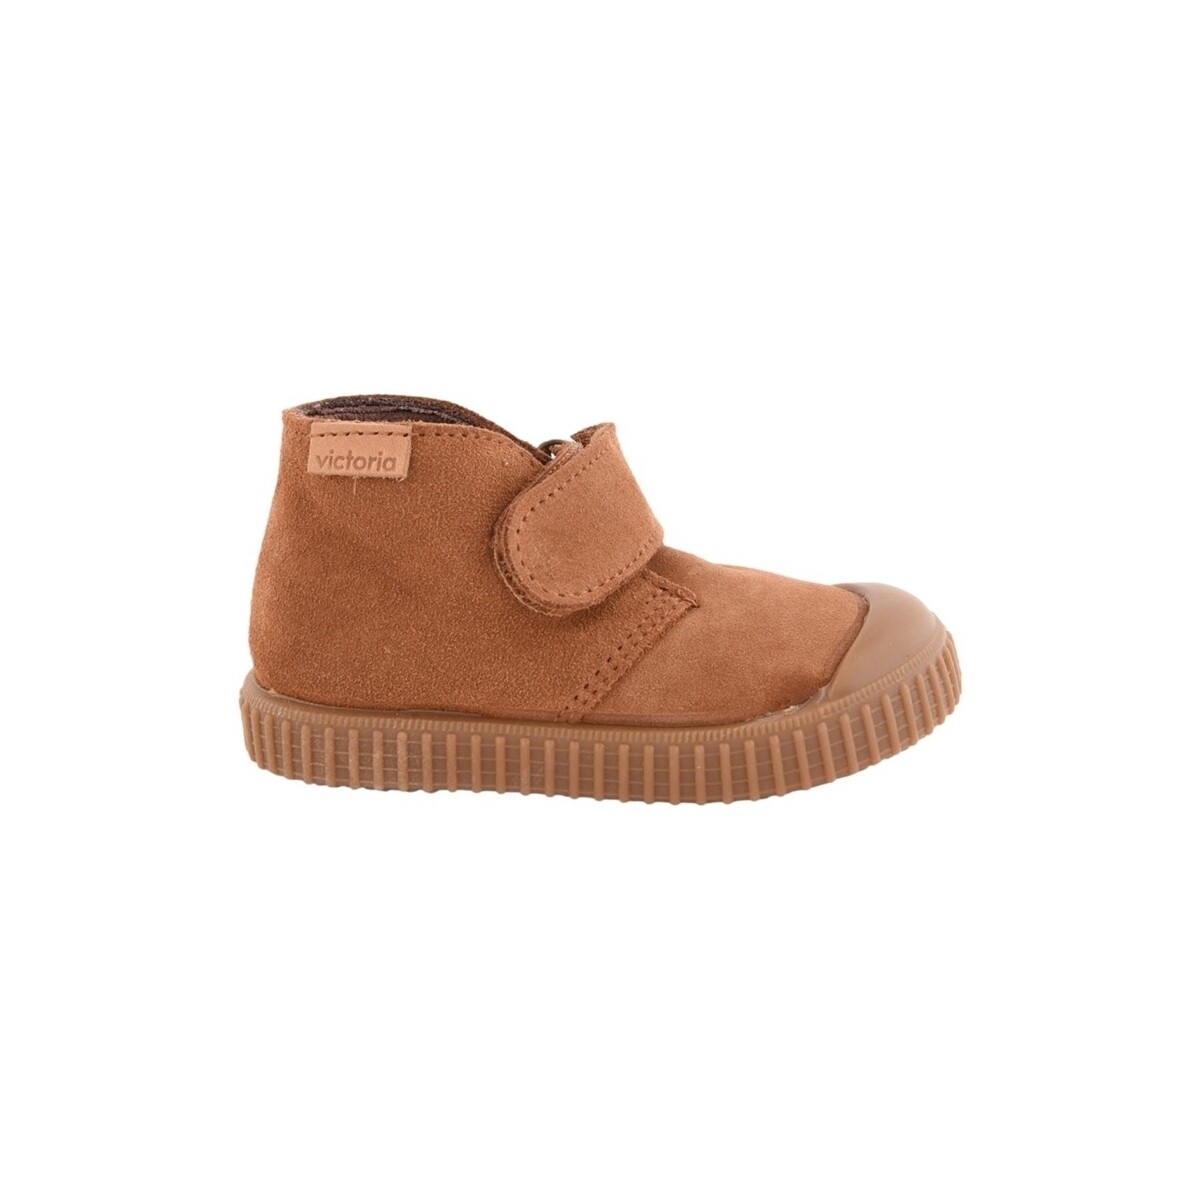 Schoenen Kinderen Laarzen Victoria Kids Boots 366146 - Cuero Brown